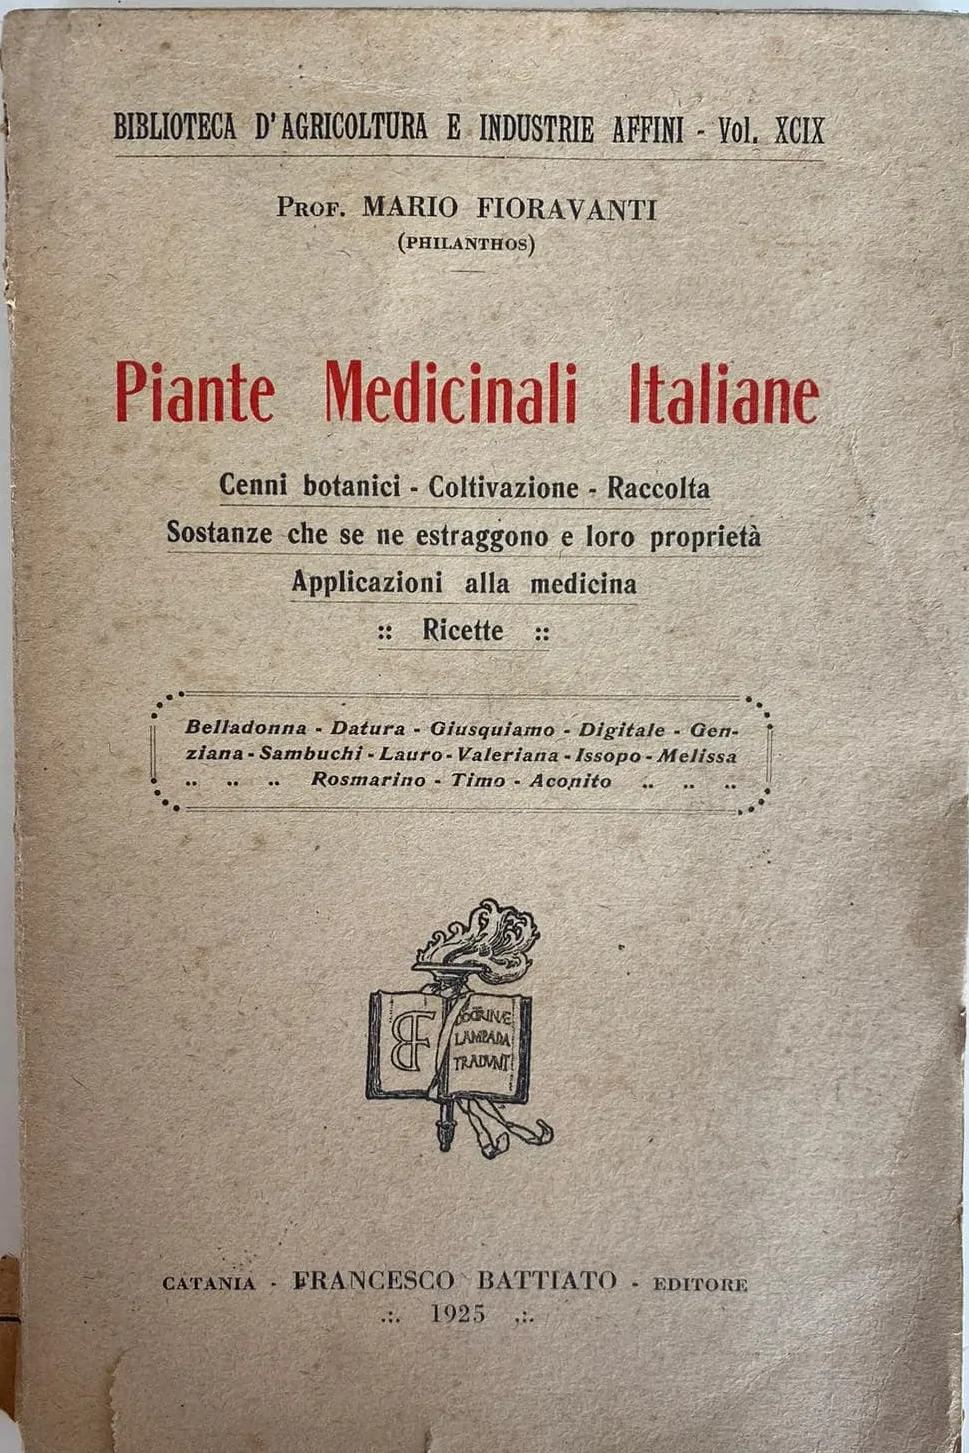 Libro di Don Vincenzo Fioravanti dedicato alle Piante Medicinali Italiane